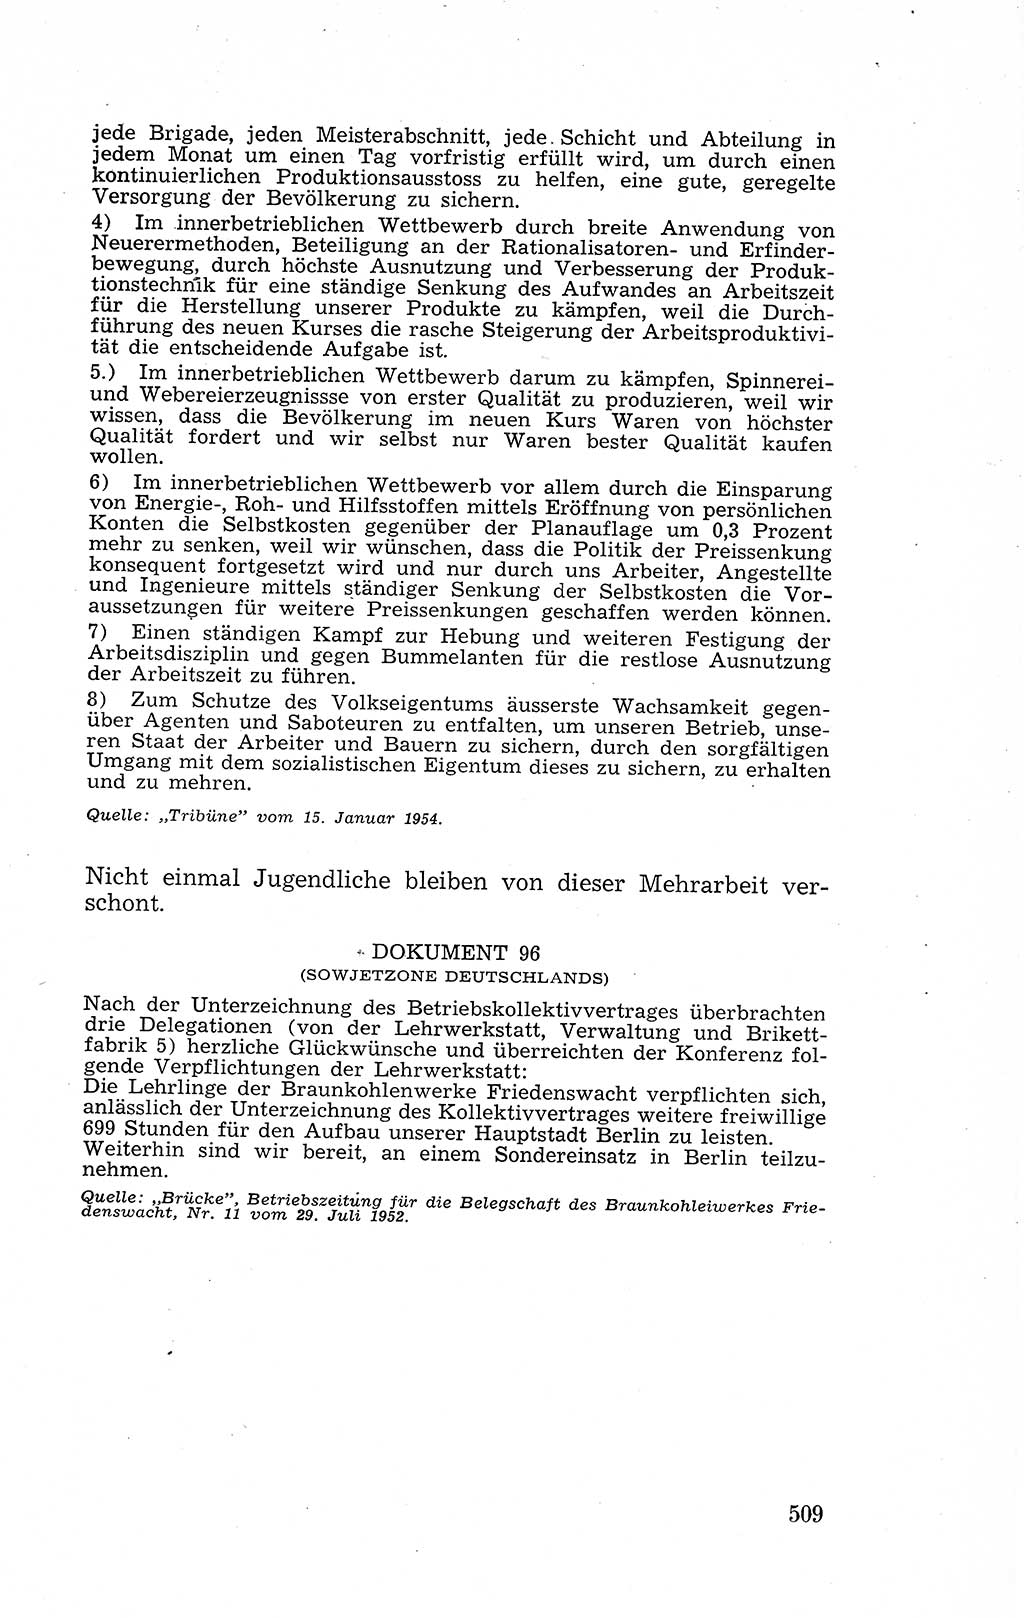 Recht in Fesseln, Dokumente, Internationale Juristen-Kommission [Bundesrepublik Deutschland (BRD)] 1955, Seite 509 (R. Dok. IJK BRD 1955, S. 509)